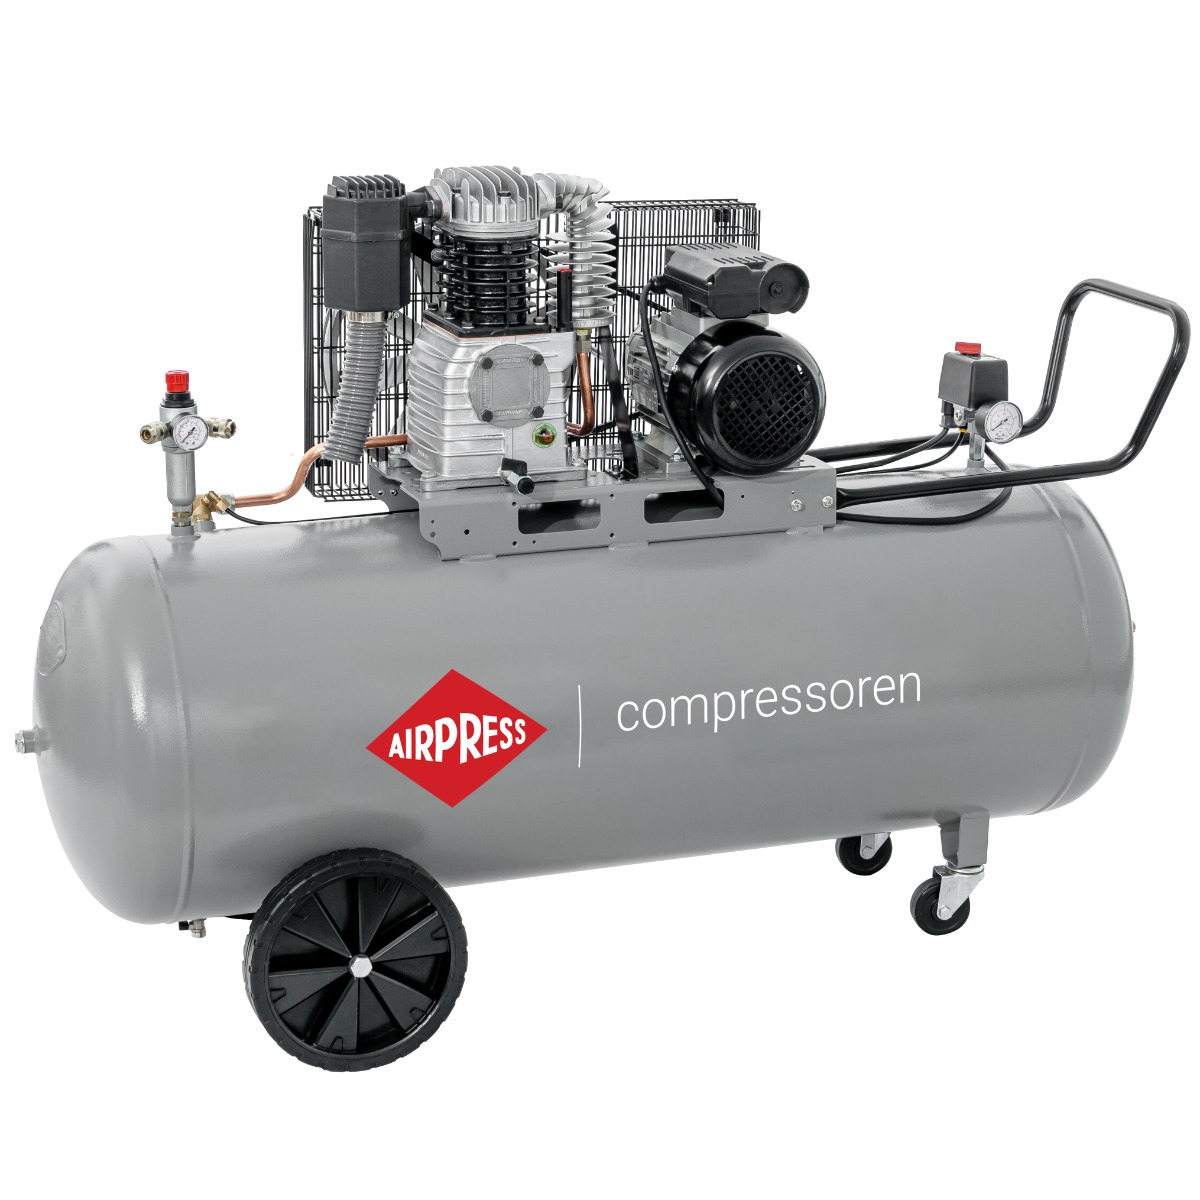 HK 425-200 Pro compressor